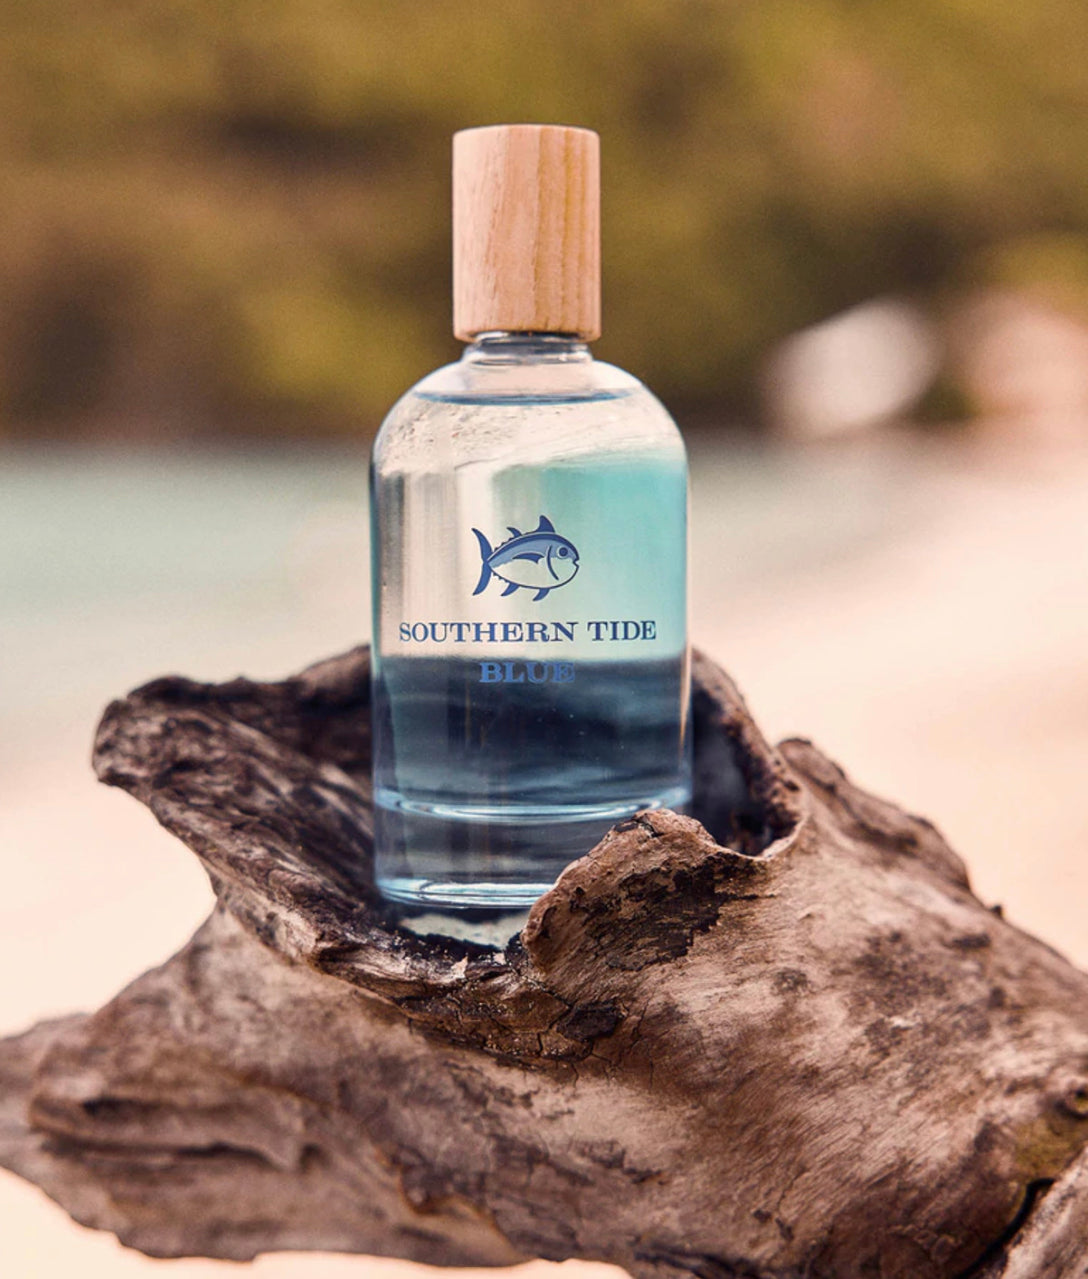 Southern Tide Blue Fragrance (3.4 fluid ounces)